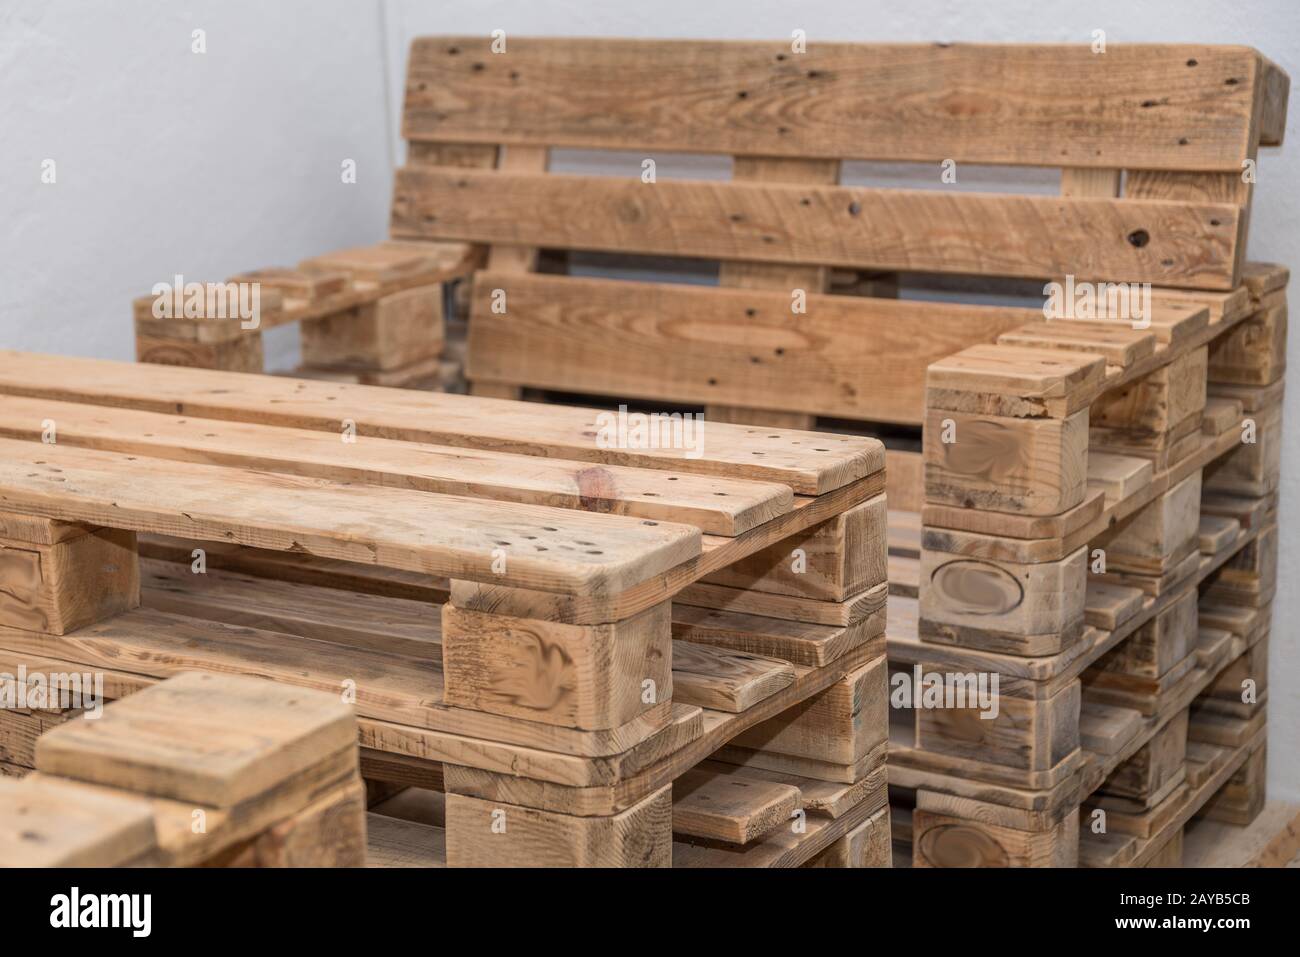 meubles rustiques en palettes de bois - mobilier en bois massif durable à vélo Banque D'Images